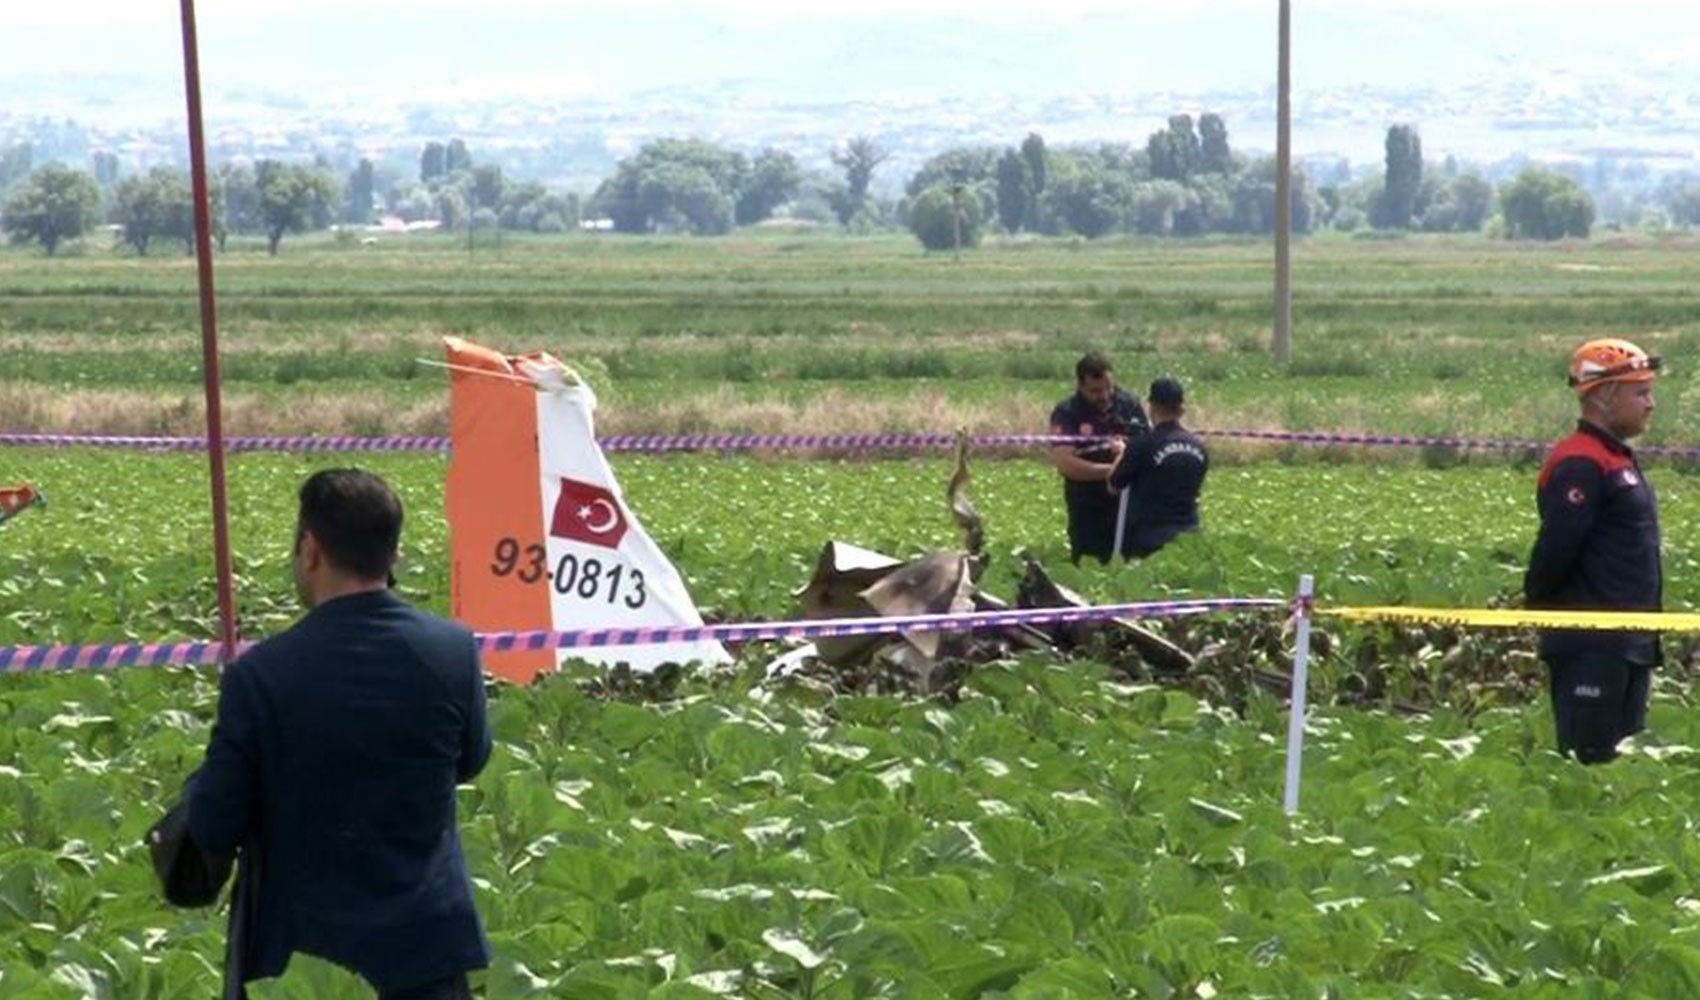 Son Dakika: Kayseri’de eğitim uçağı düştü! MSB 2 pilotun şehit olduğunu açıkladı